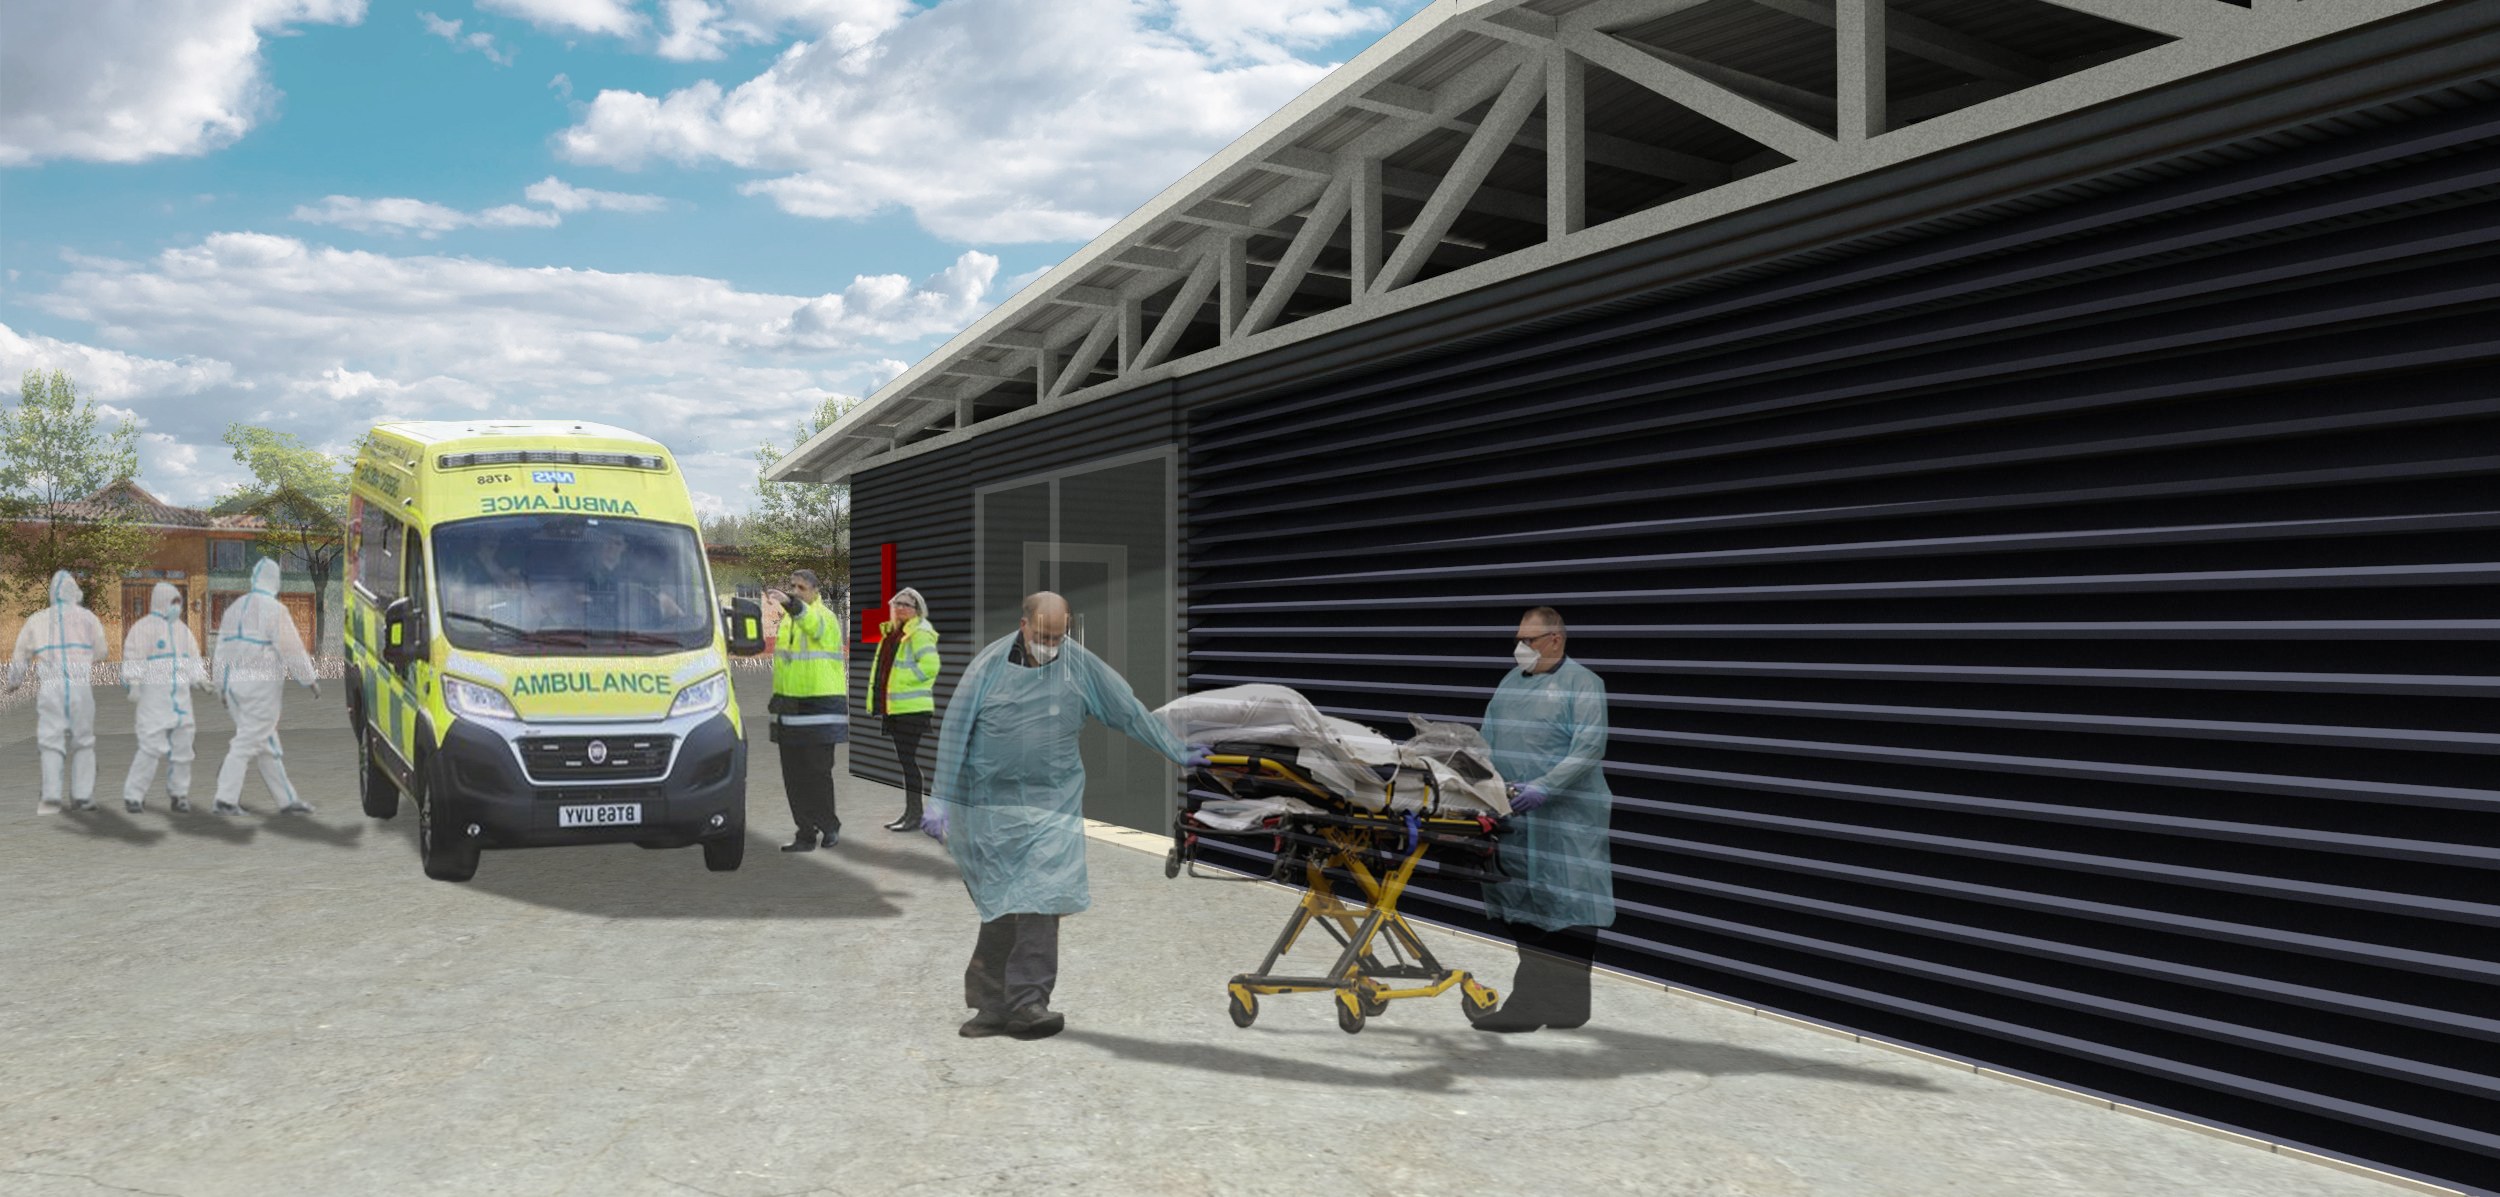 Simulación en 3D de una escena hospitalaria. Dos doctores sosteniendo una camilla. Al fondo una ambulancia con 2 paramédicos y 3 profesionales de la salud con trajes overoles blancos.